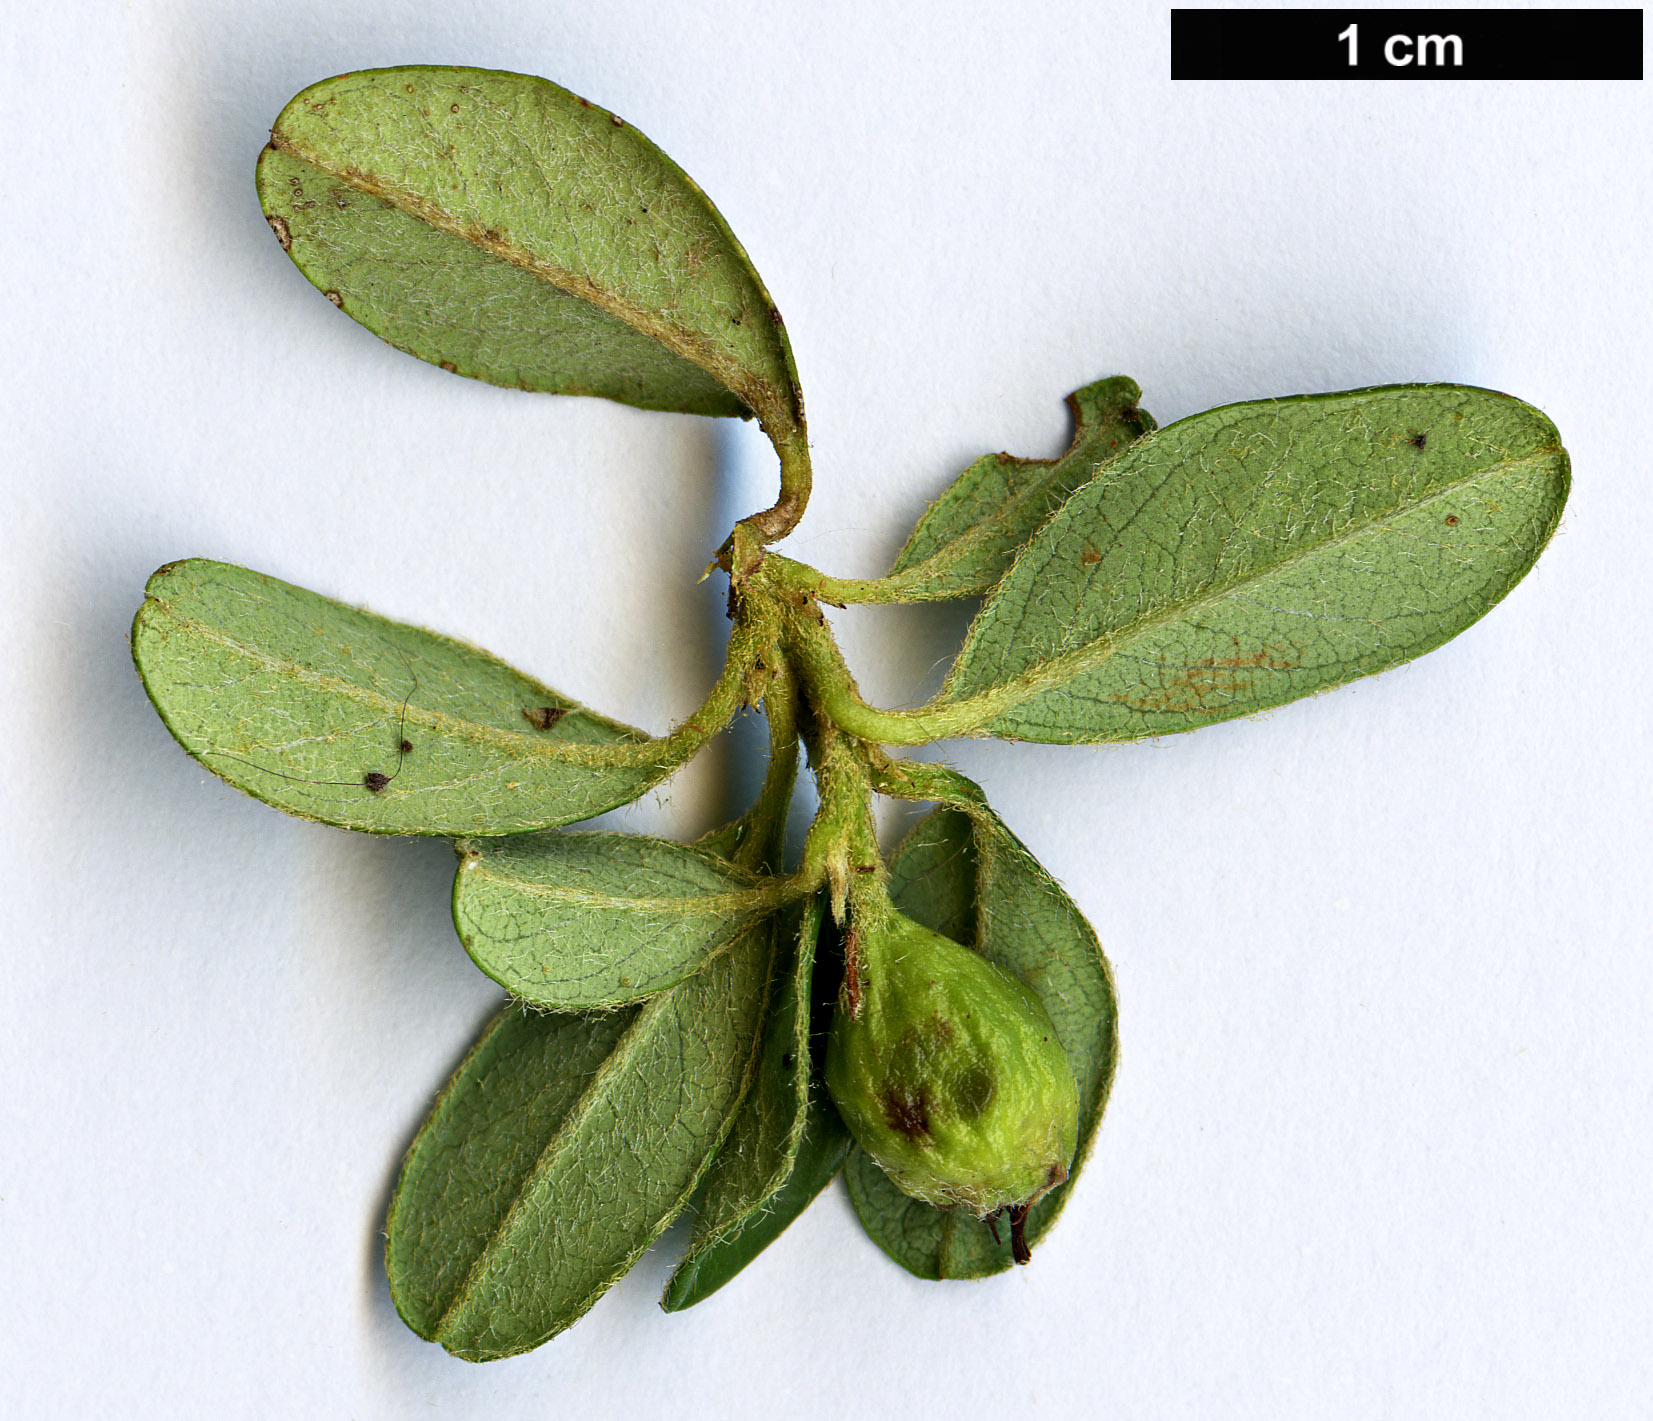 High resolution image: Family: Rosaceae - Genus: Cotoneaster - Taxon: ×suecicus (C.conspicuus × C.dammeri)